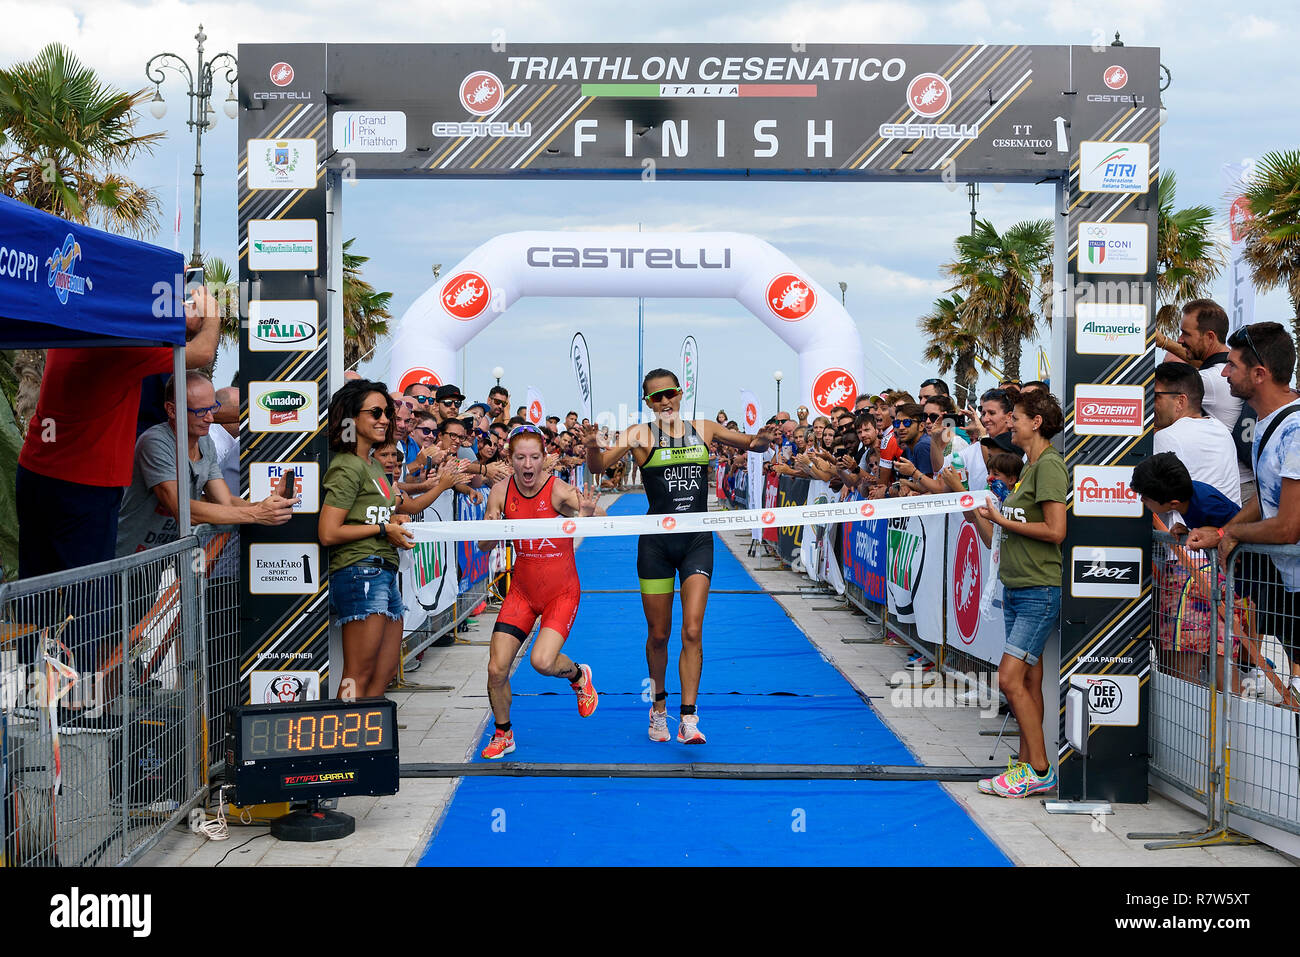 CESENATICO, ITALIA - SEPTEMBER 09, 2017: Triathlon Cesenatico, the female winner Annamaria Mazzetti crosses the finish line winning in the sprint. Stock Photo